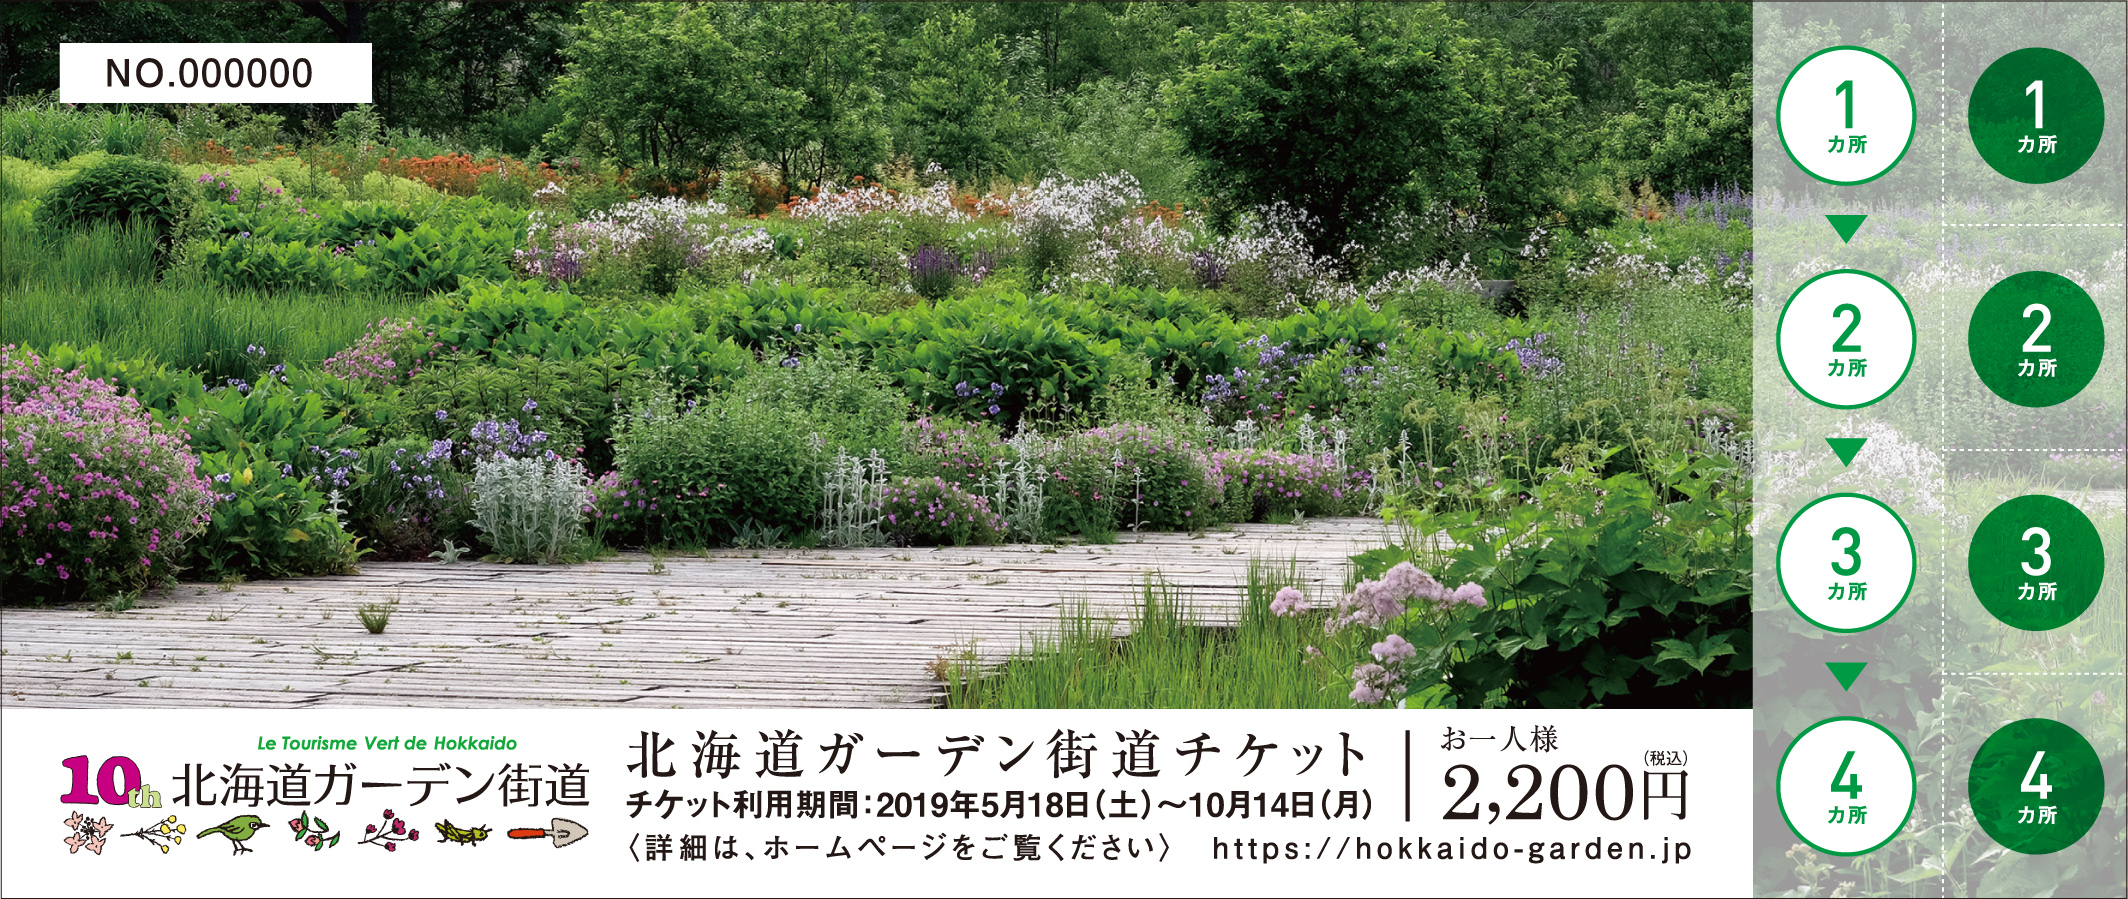 8つのガーデンを巡る 北海道ガーデン街道 が5月18日からスタート 北海道ガーデン